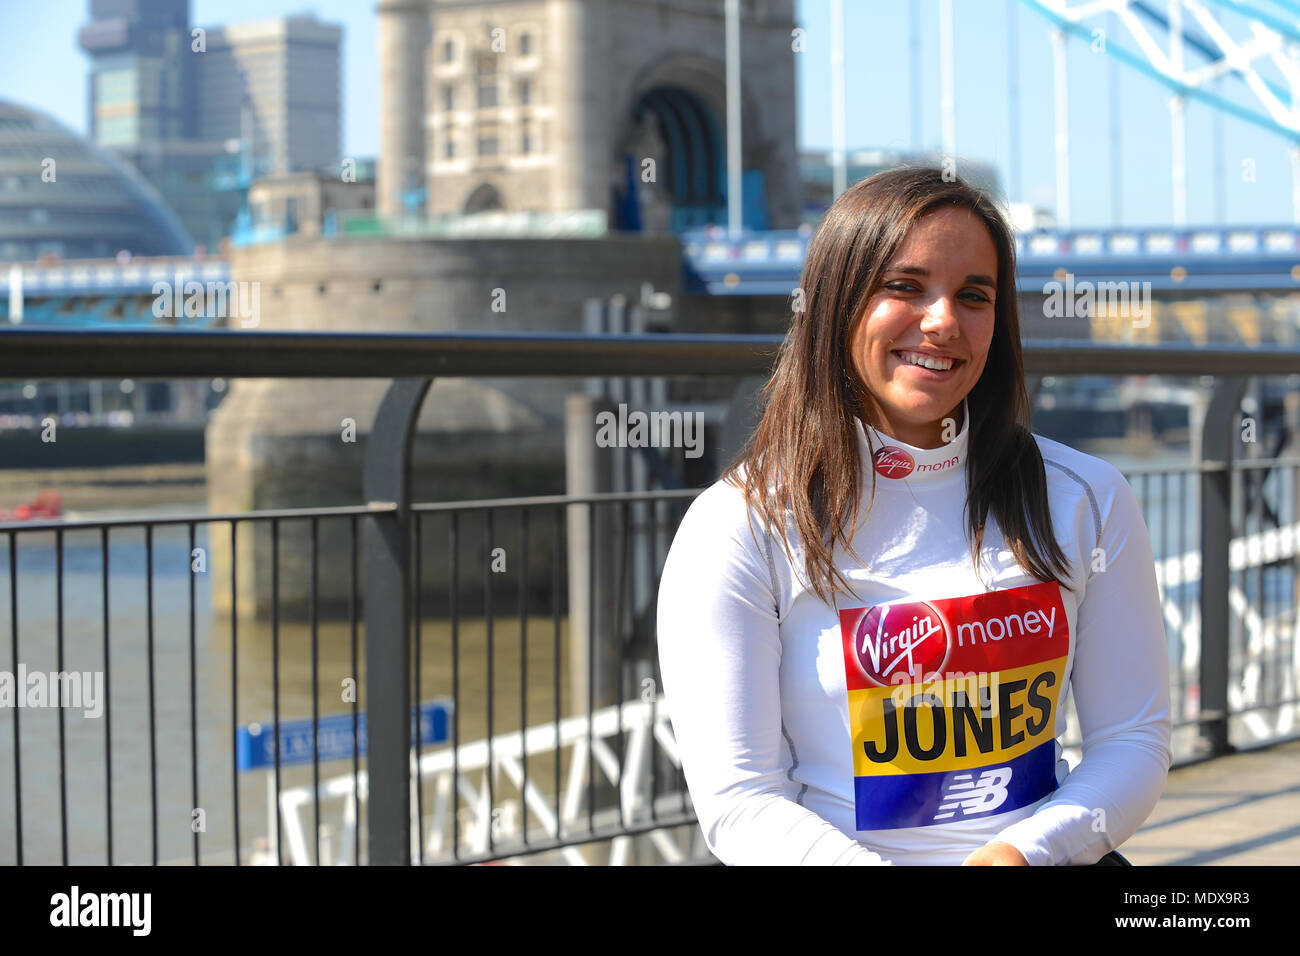 Jade Jones (GBR) in corrispondenza di una Vergine denaro maratona di Londra pre-gara photocall di elite atleti disabili, Tower Hotel, Londra, Regno Unito. Jade Jones ha fatto il suo senior marathon debutto alla maratona di Londra nel 2014 a 18 dopo aver vinto la Mini Maratona di Londra per tre volte di fila dal 2011 al 2013, due volte la rottura sotto 17s girls' corso record. Lei non è riuscito a finire la maratona completa in entrambe 2015 e 2016 ma ha fatto un enorme miglioramento rispetto al quinto posto lo scorso anno in 1:51:46. La maratona che si terrà domenica 22 aprile è parte del mondo marathon Major e anche il mondo Para atletica mondiale di maratona Cu Foto Stock